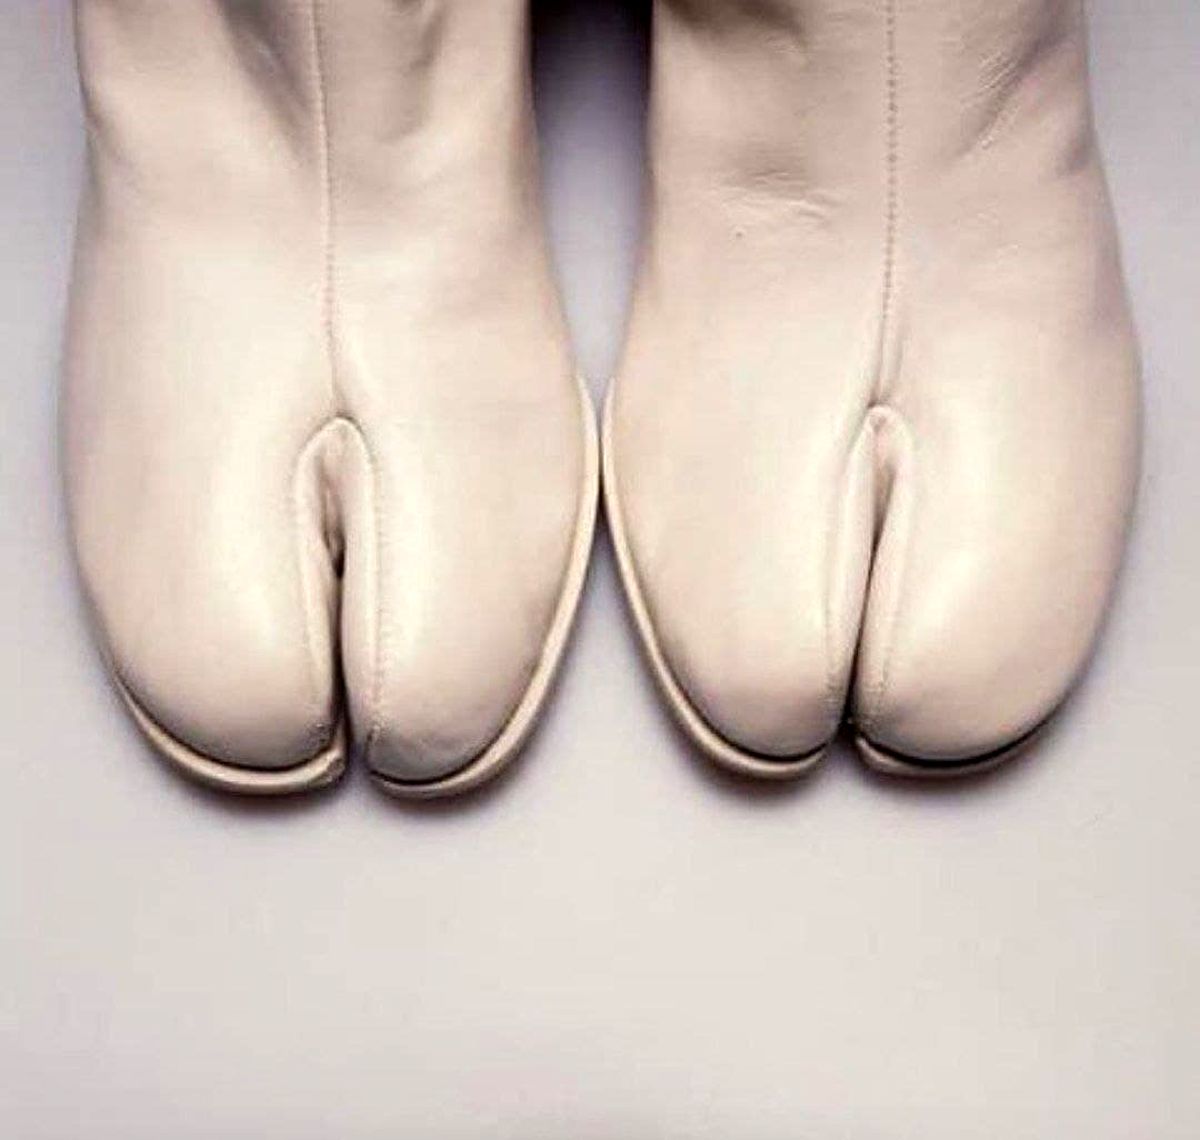 کفش های زشتی که جدیدا برای زنان مد شده است+عکس